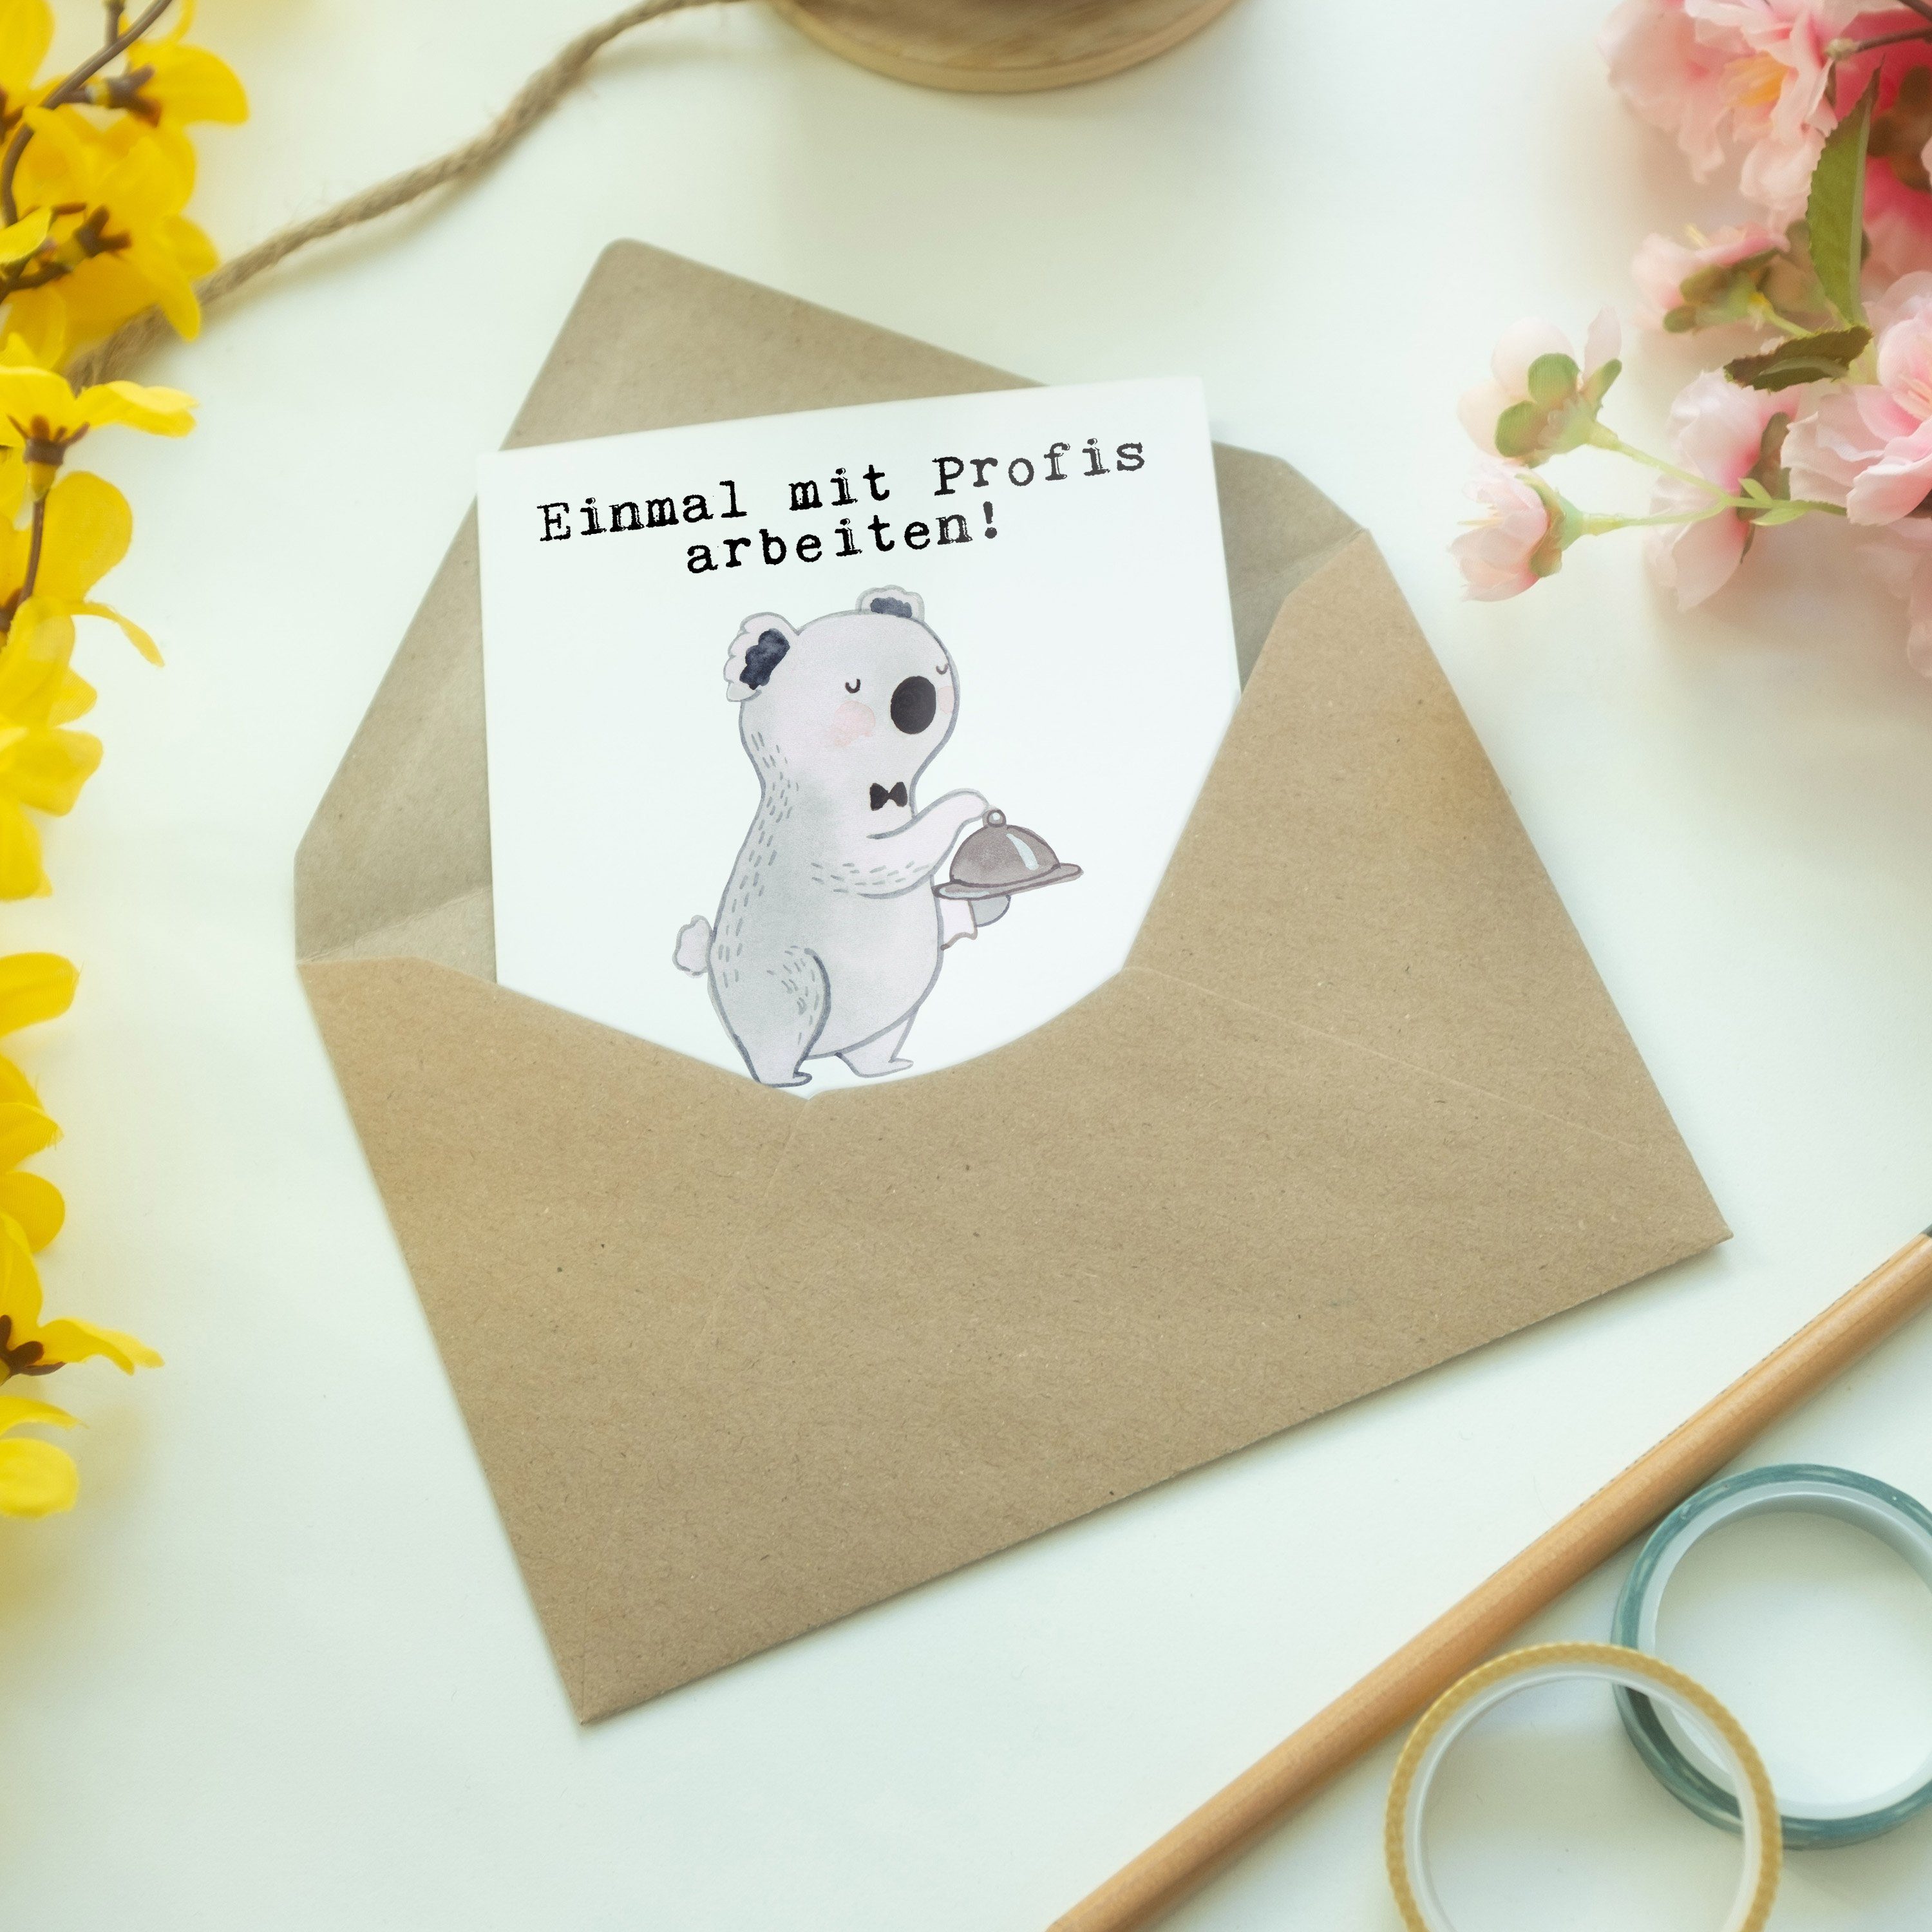 Mr. & Mrs. - Hochzeitskarte Grußkarte Weiß Restaurantfachmann - Leidenschaft Geschenk, Panda aus